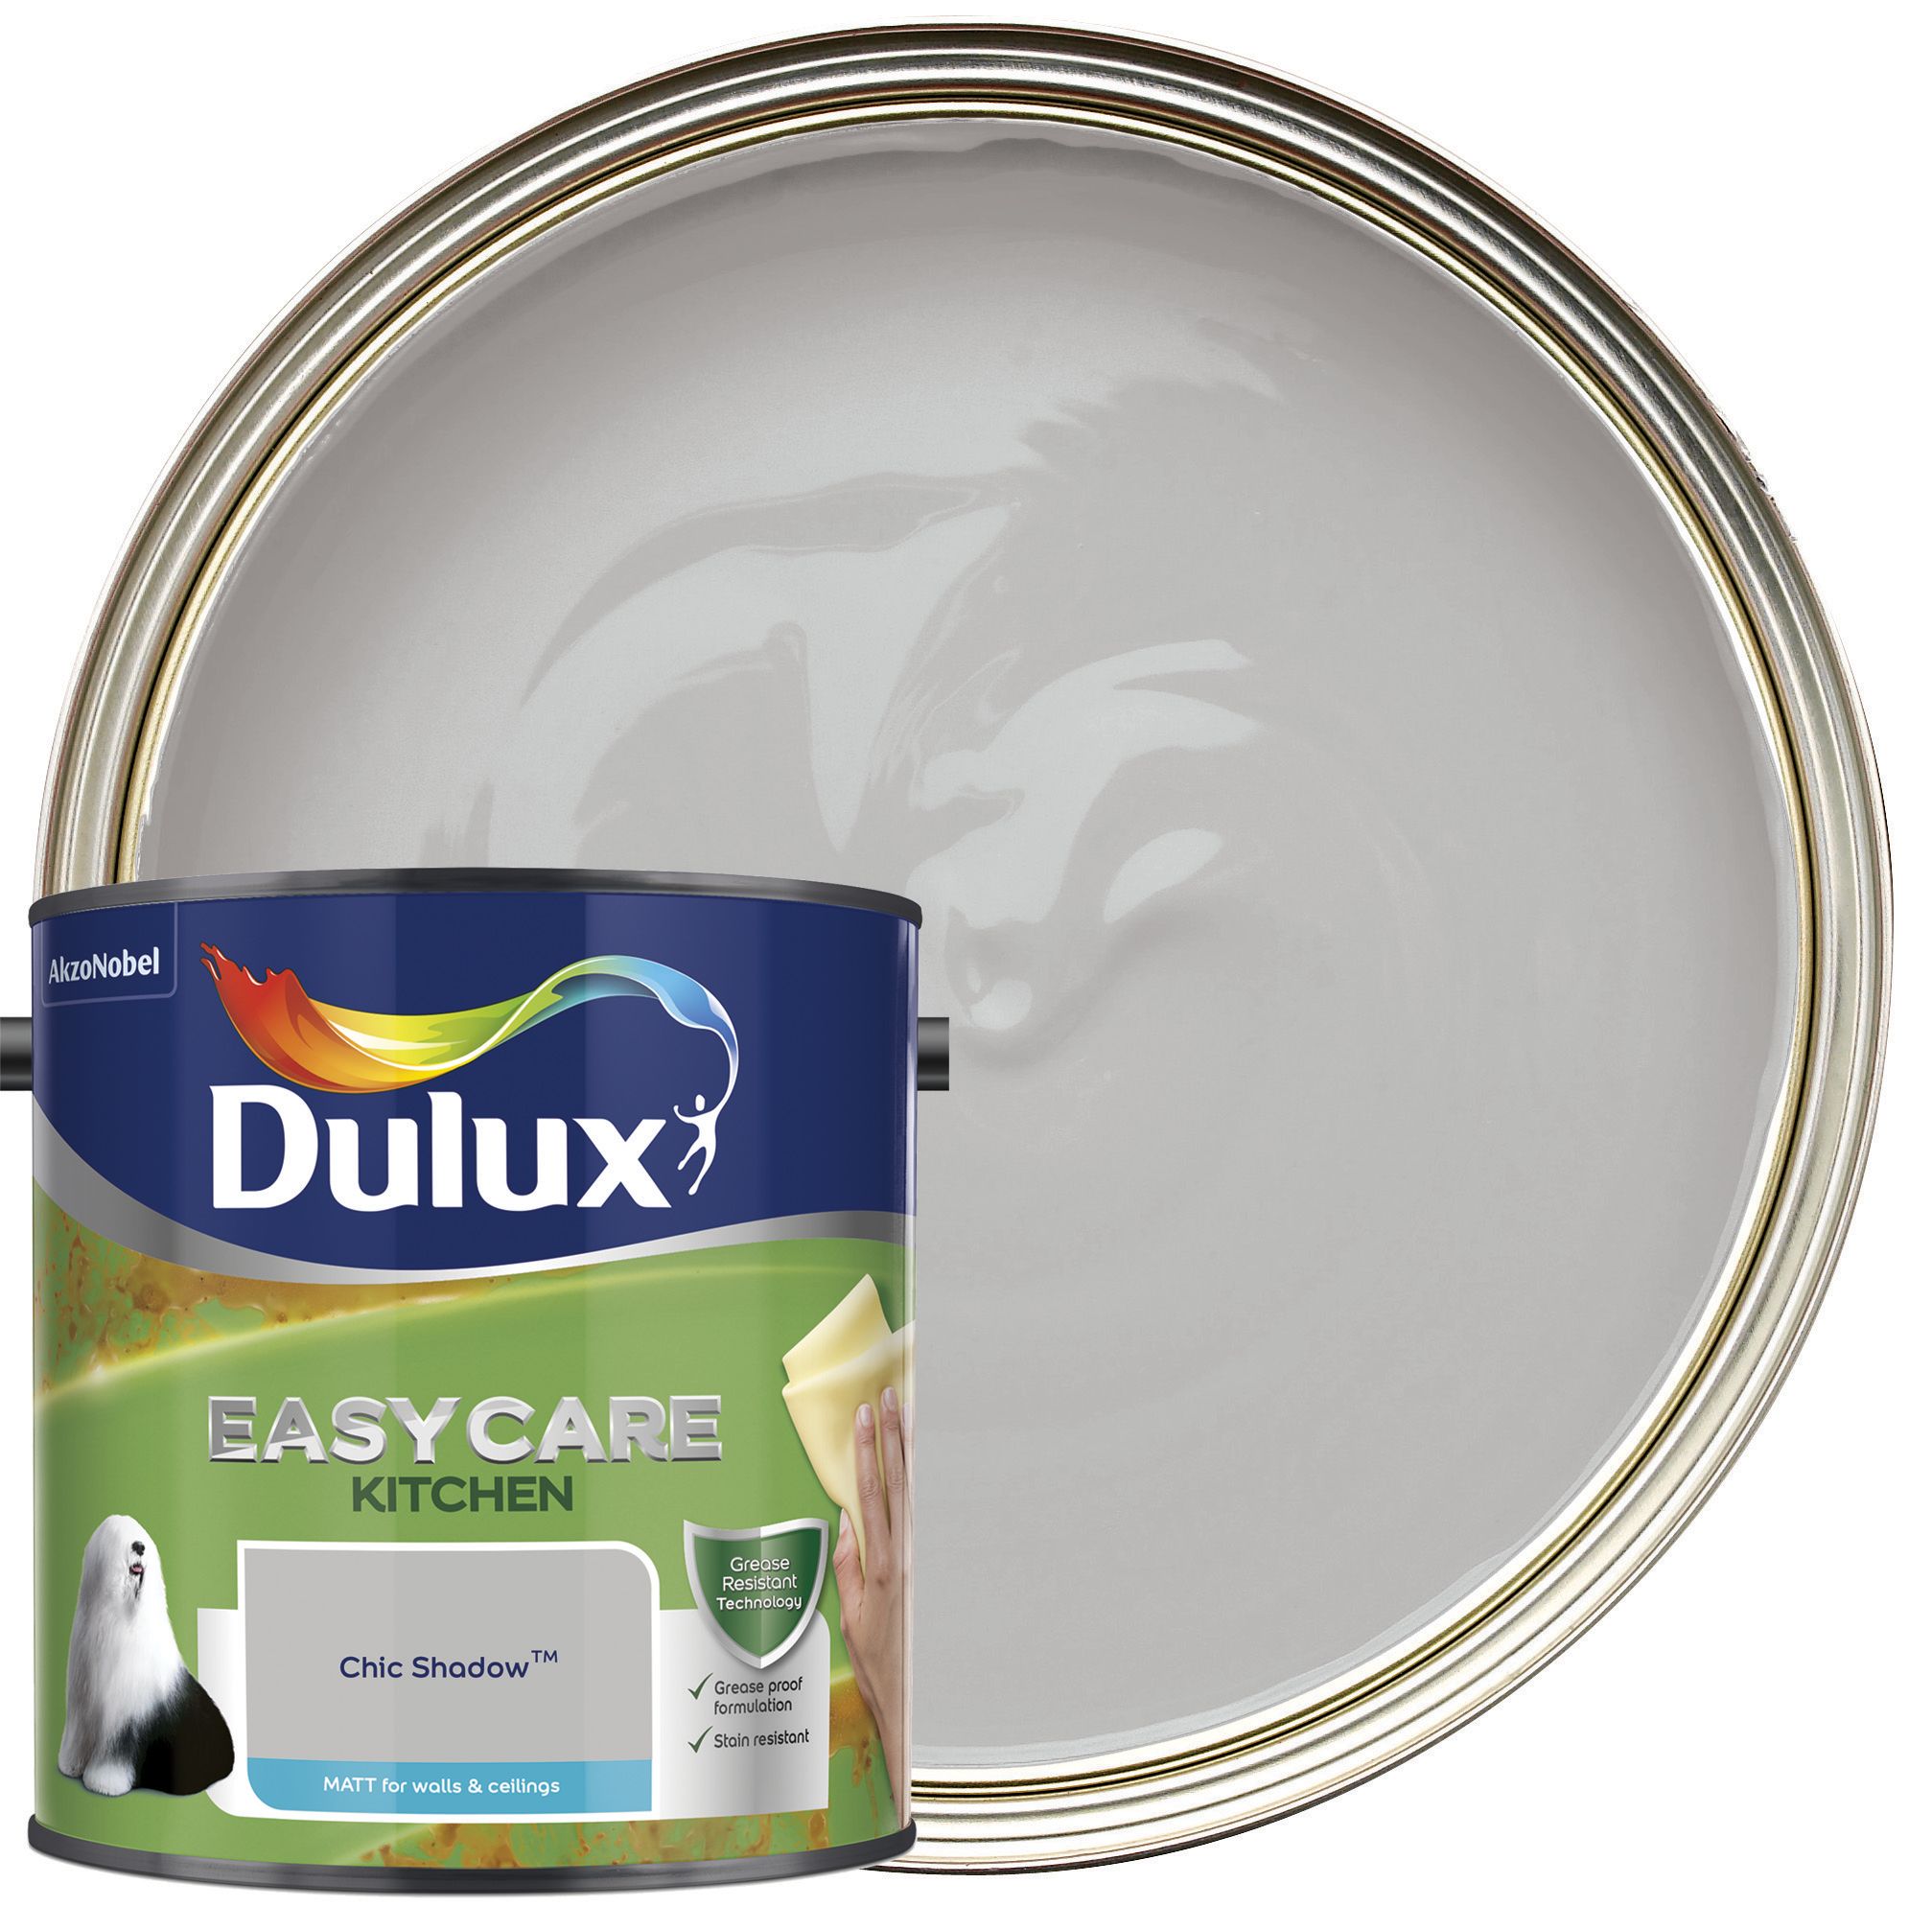 Image of Dulux Easycare Kitchen Matt Emulsion Paint - Chic Shadow - 2.5L